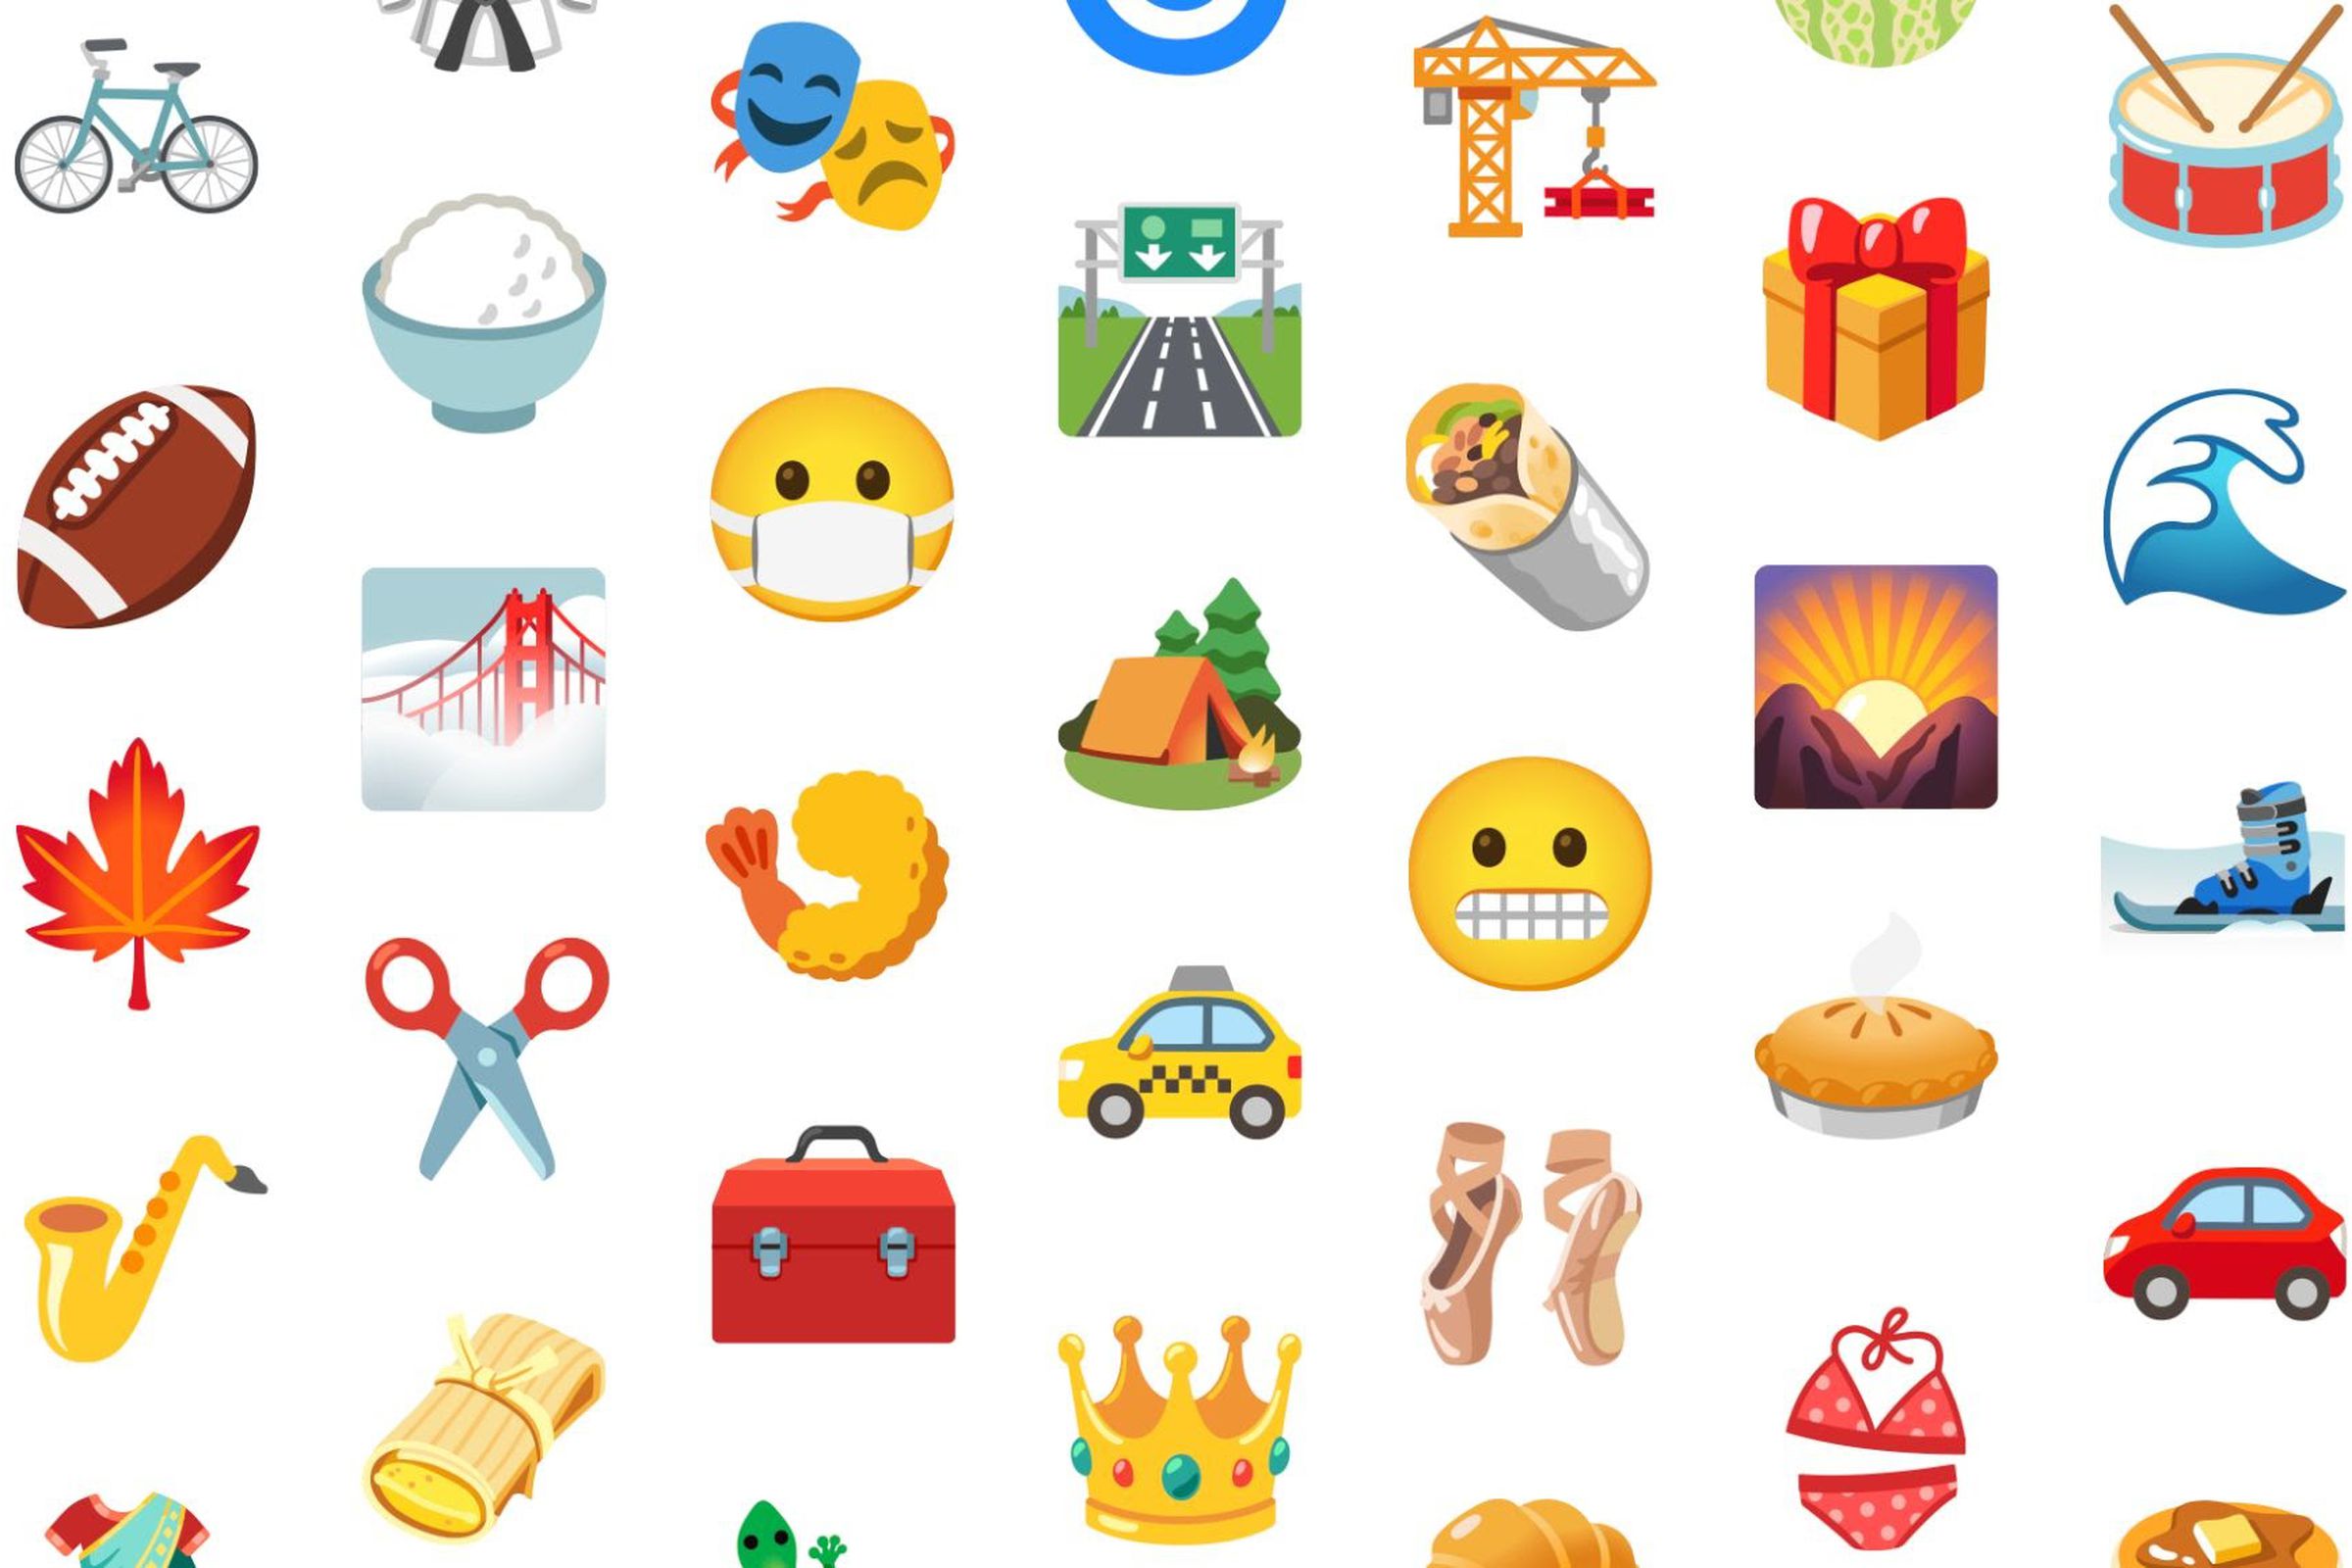 992 of Google’s emoji designs are receiving tweaks.